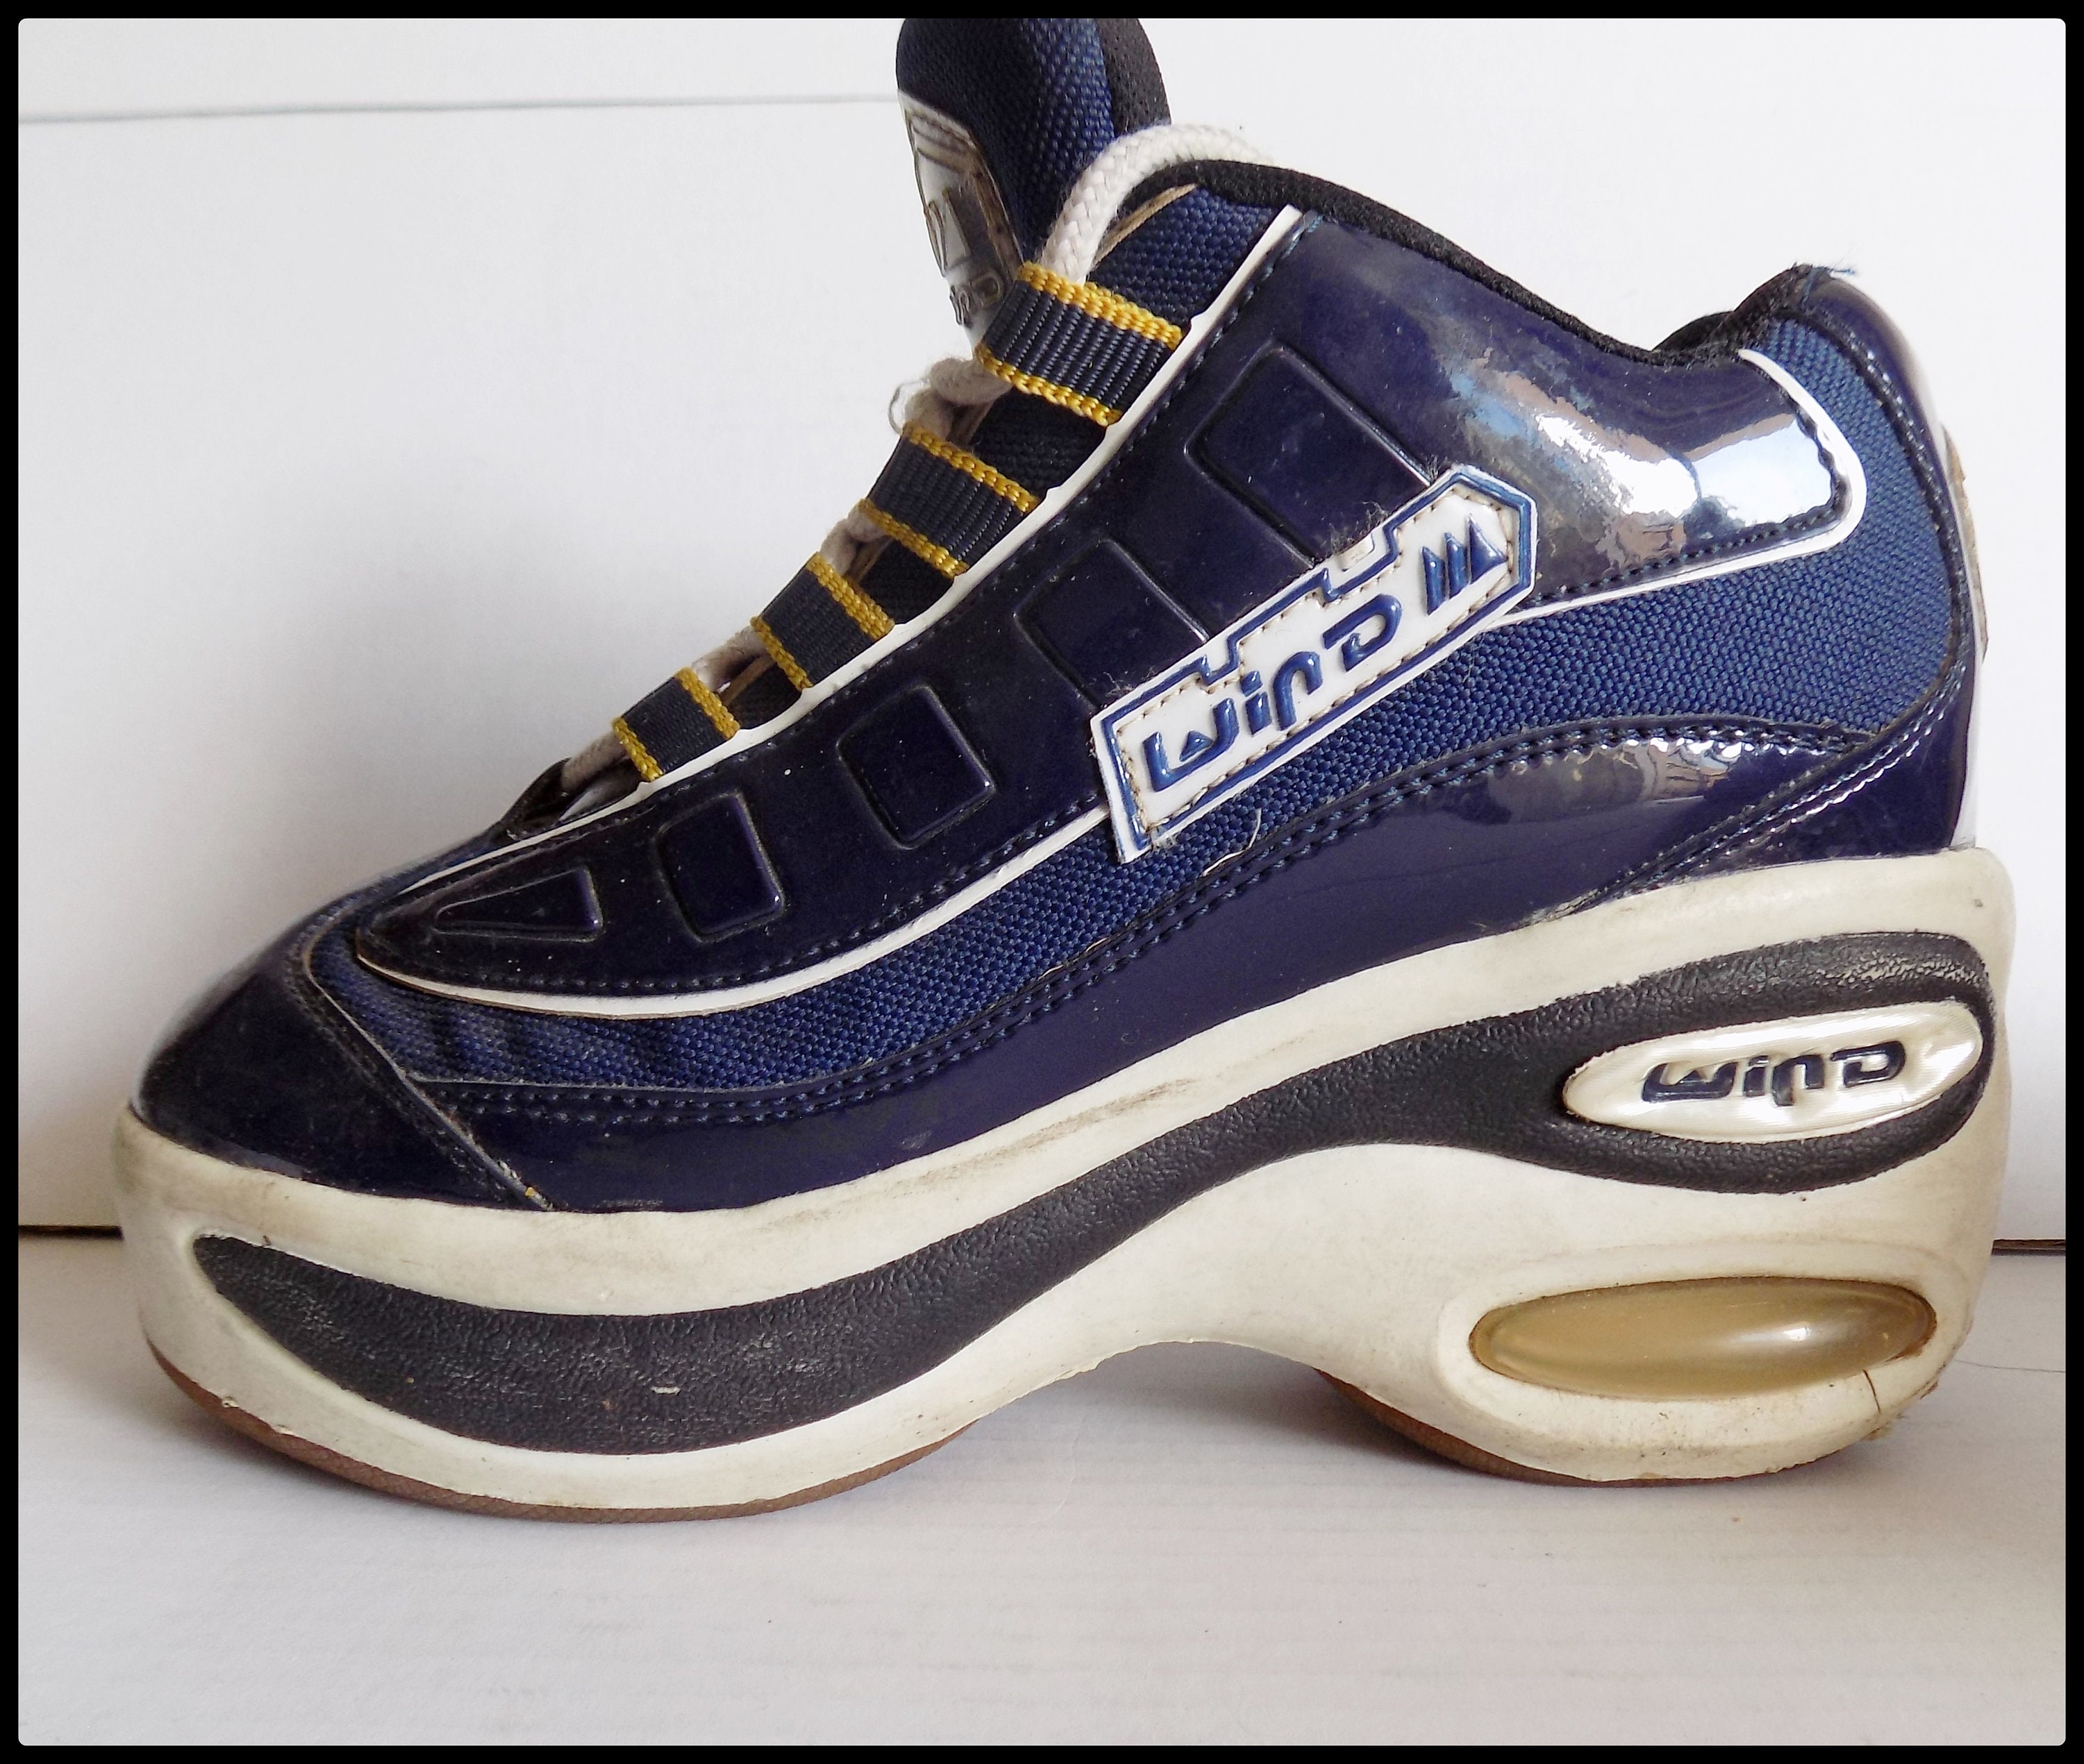 INSANE vintage 90s Club Kid platform sneakers by... - Depop